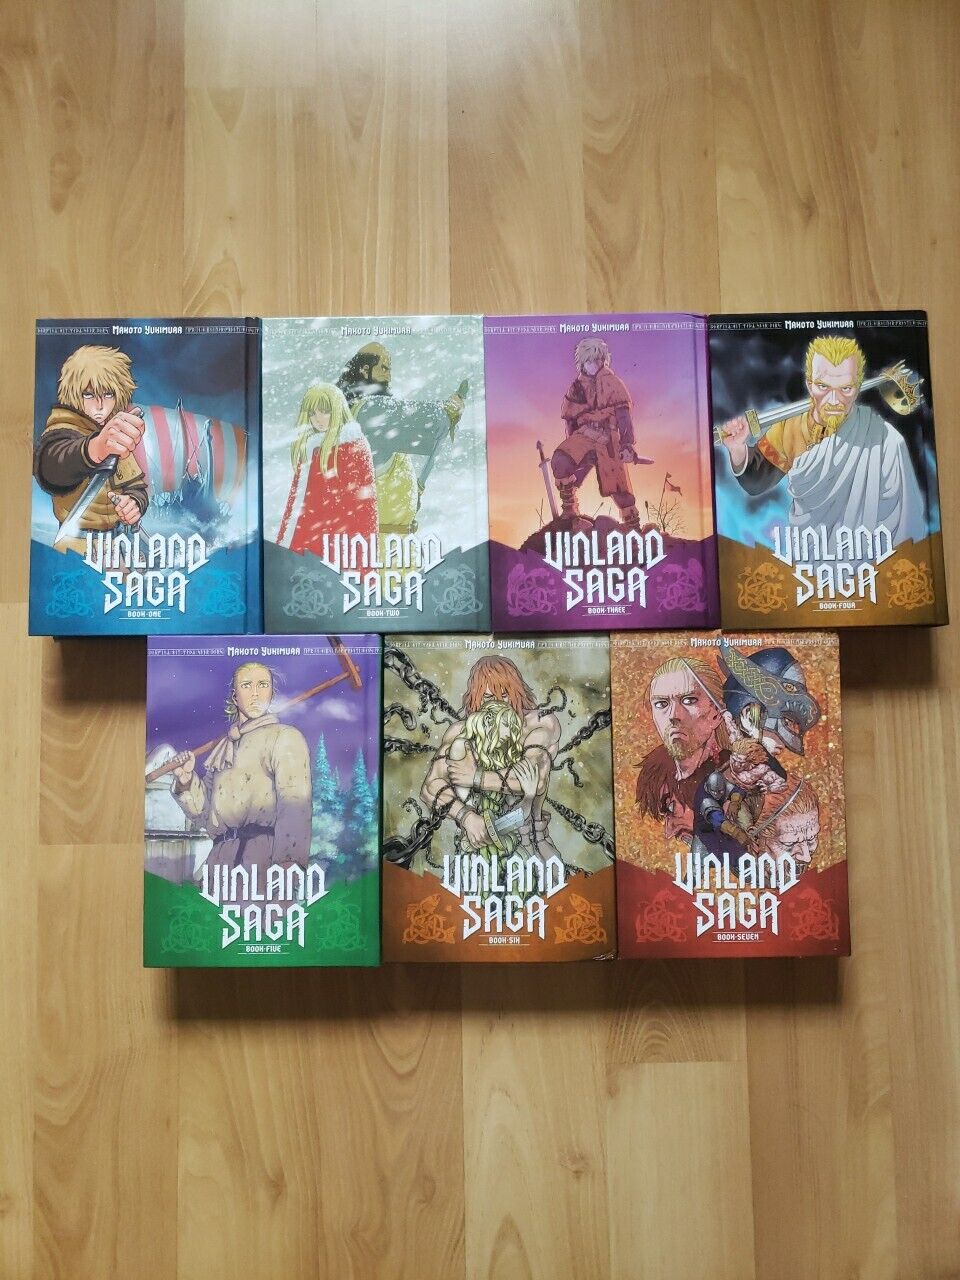 Vinland Saga Manga Volumes 1-7